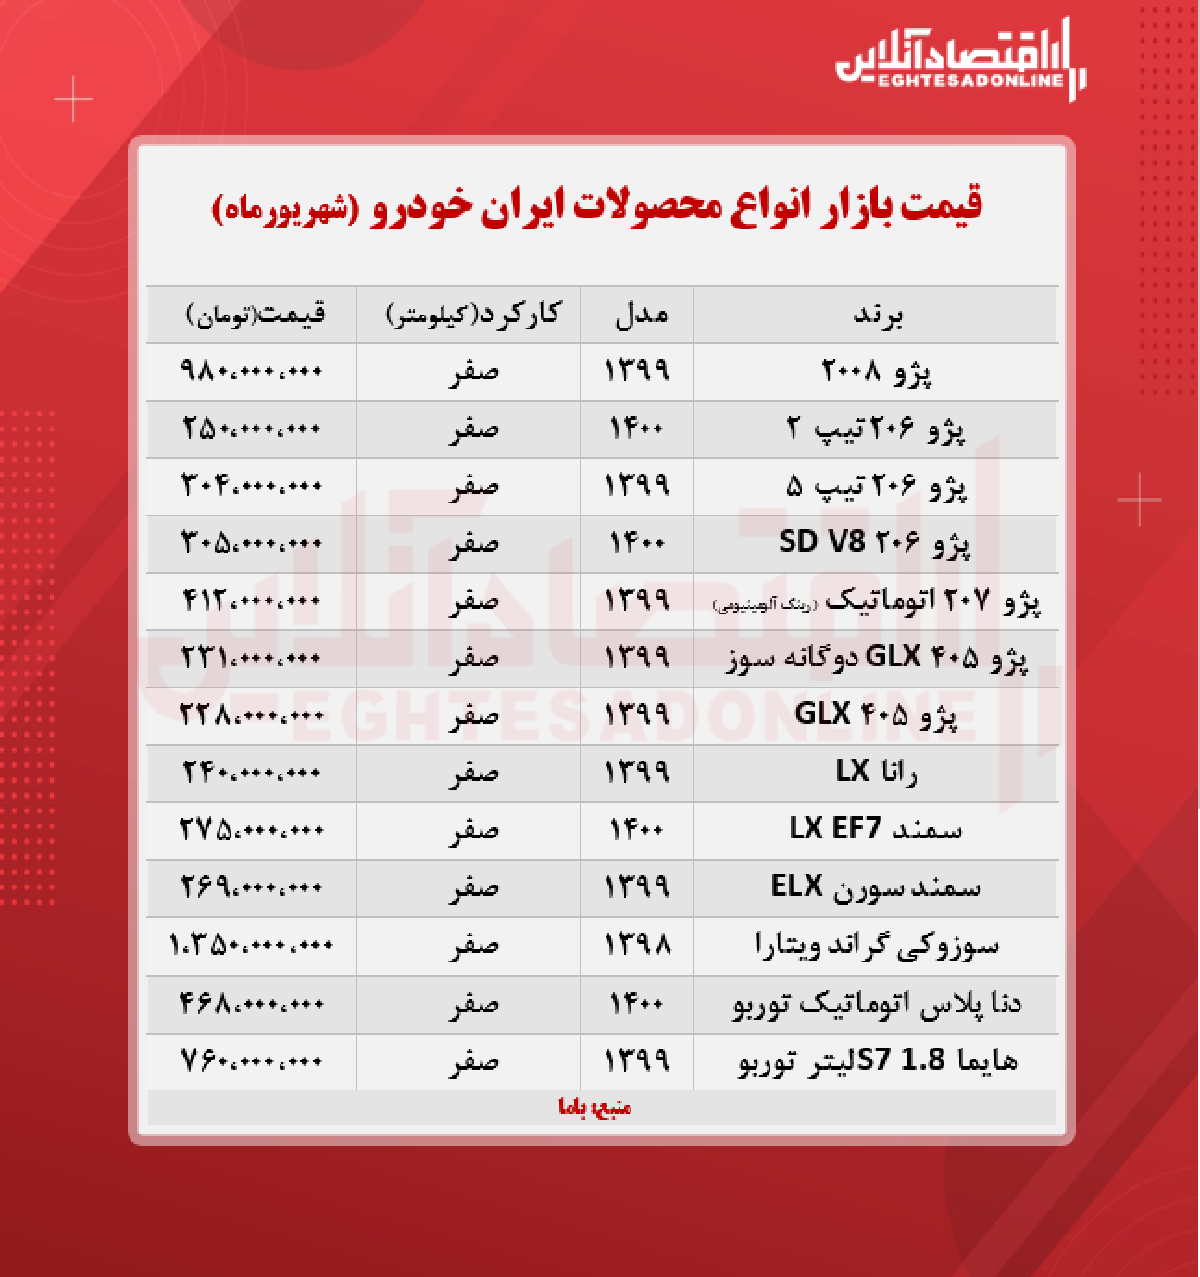 جدیدترین قیمت محصولات ایران خودرو + جدول